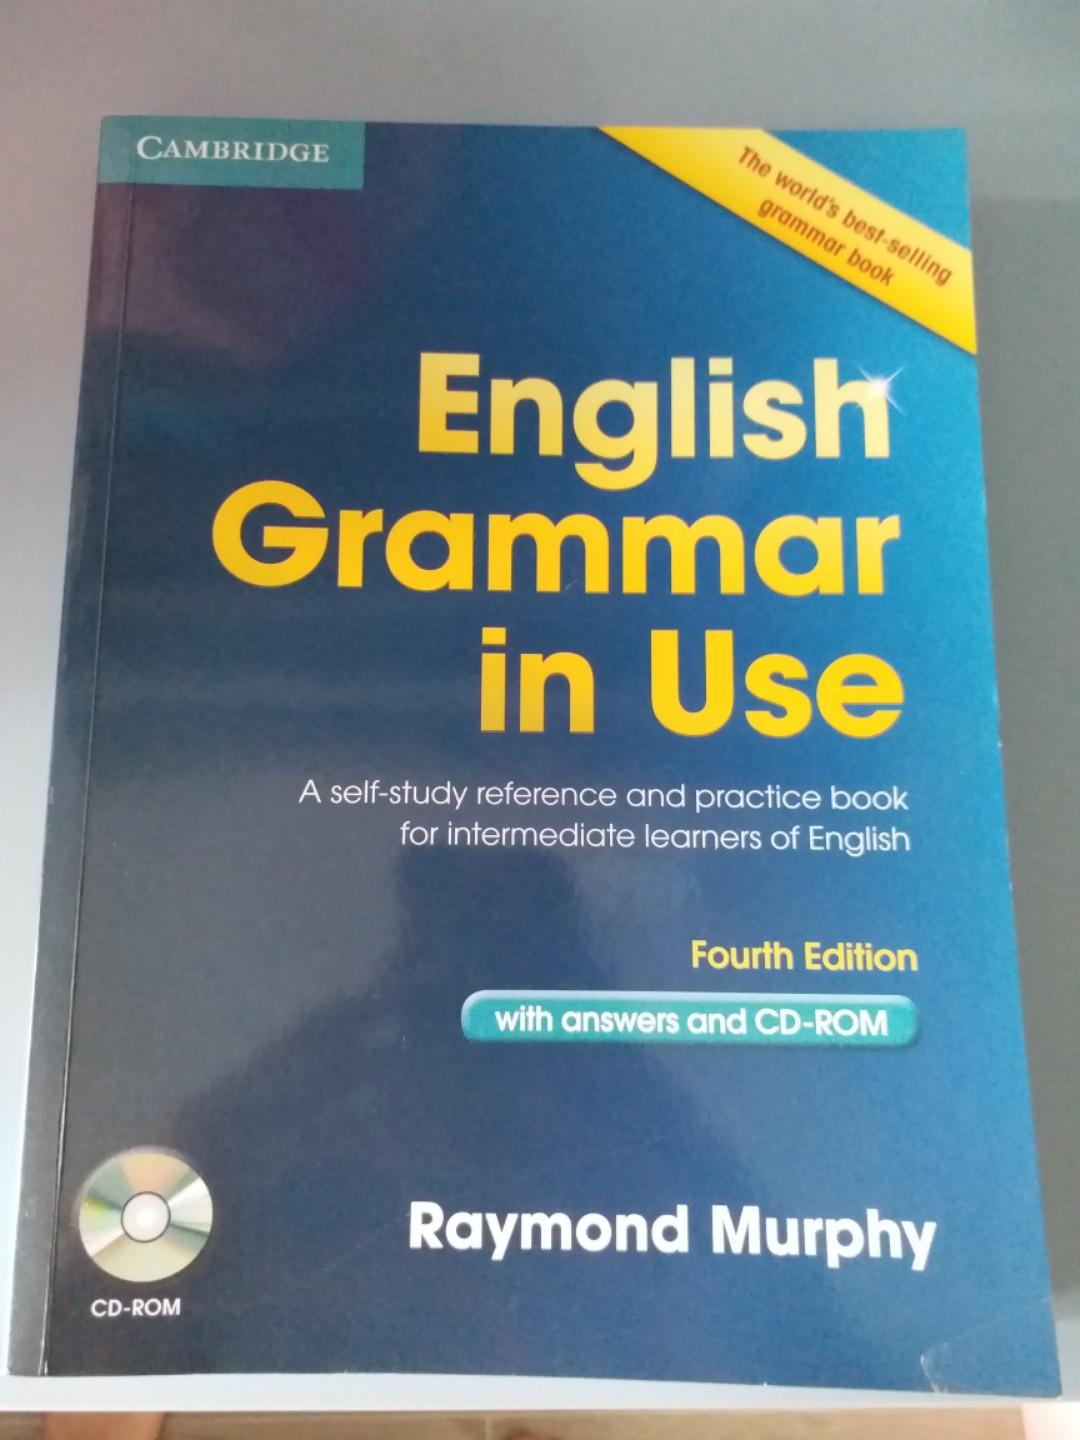 Cambridge English Grammar In Use 適合小學生的英語文法書 Textbooks